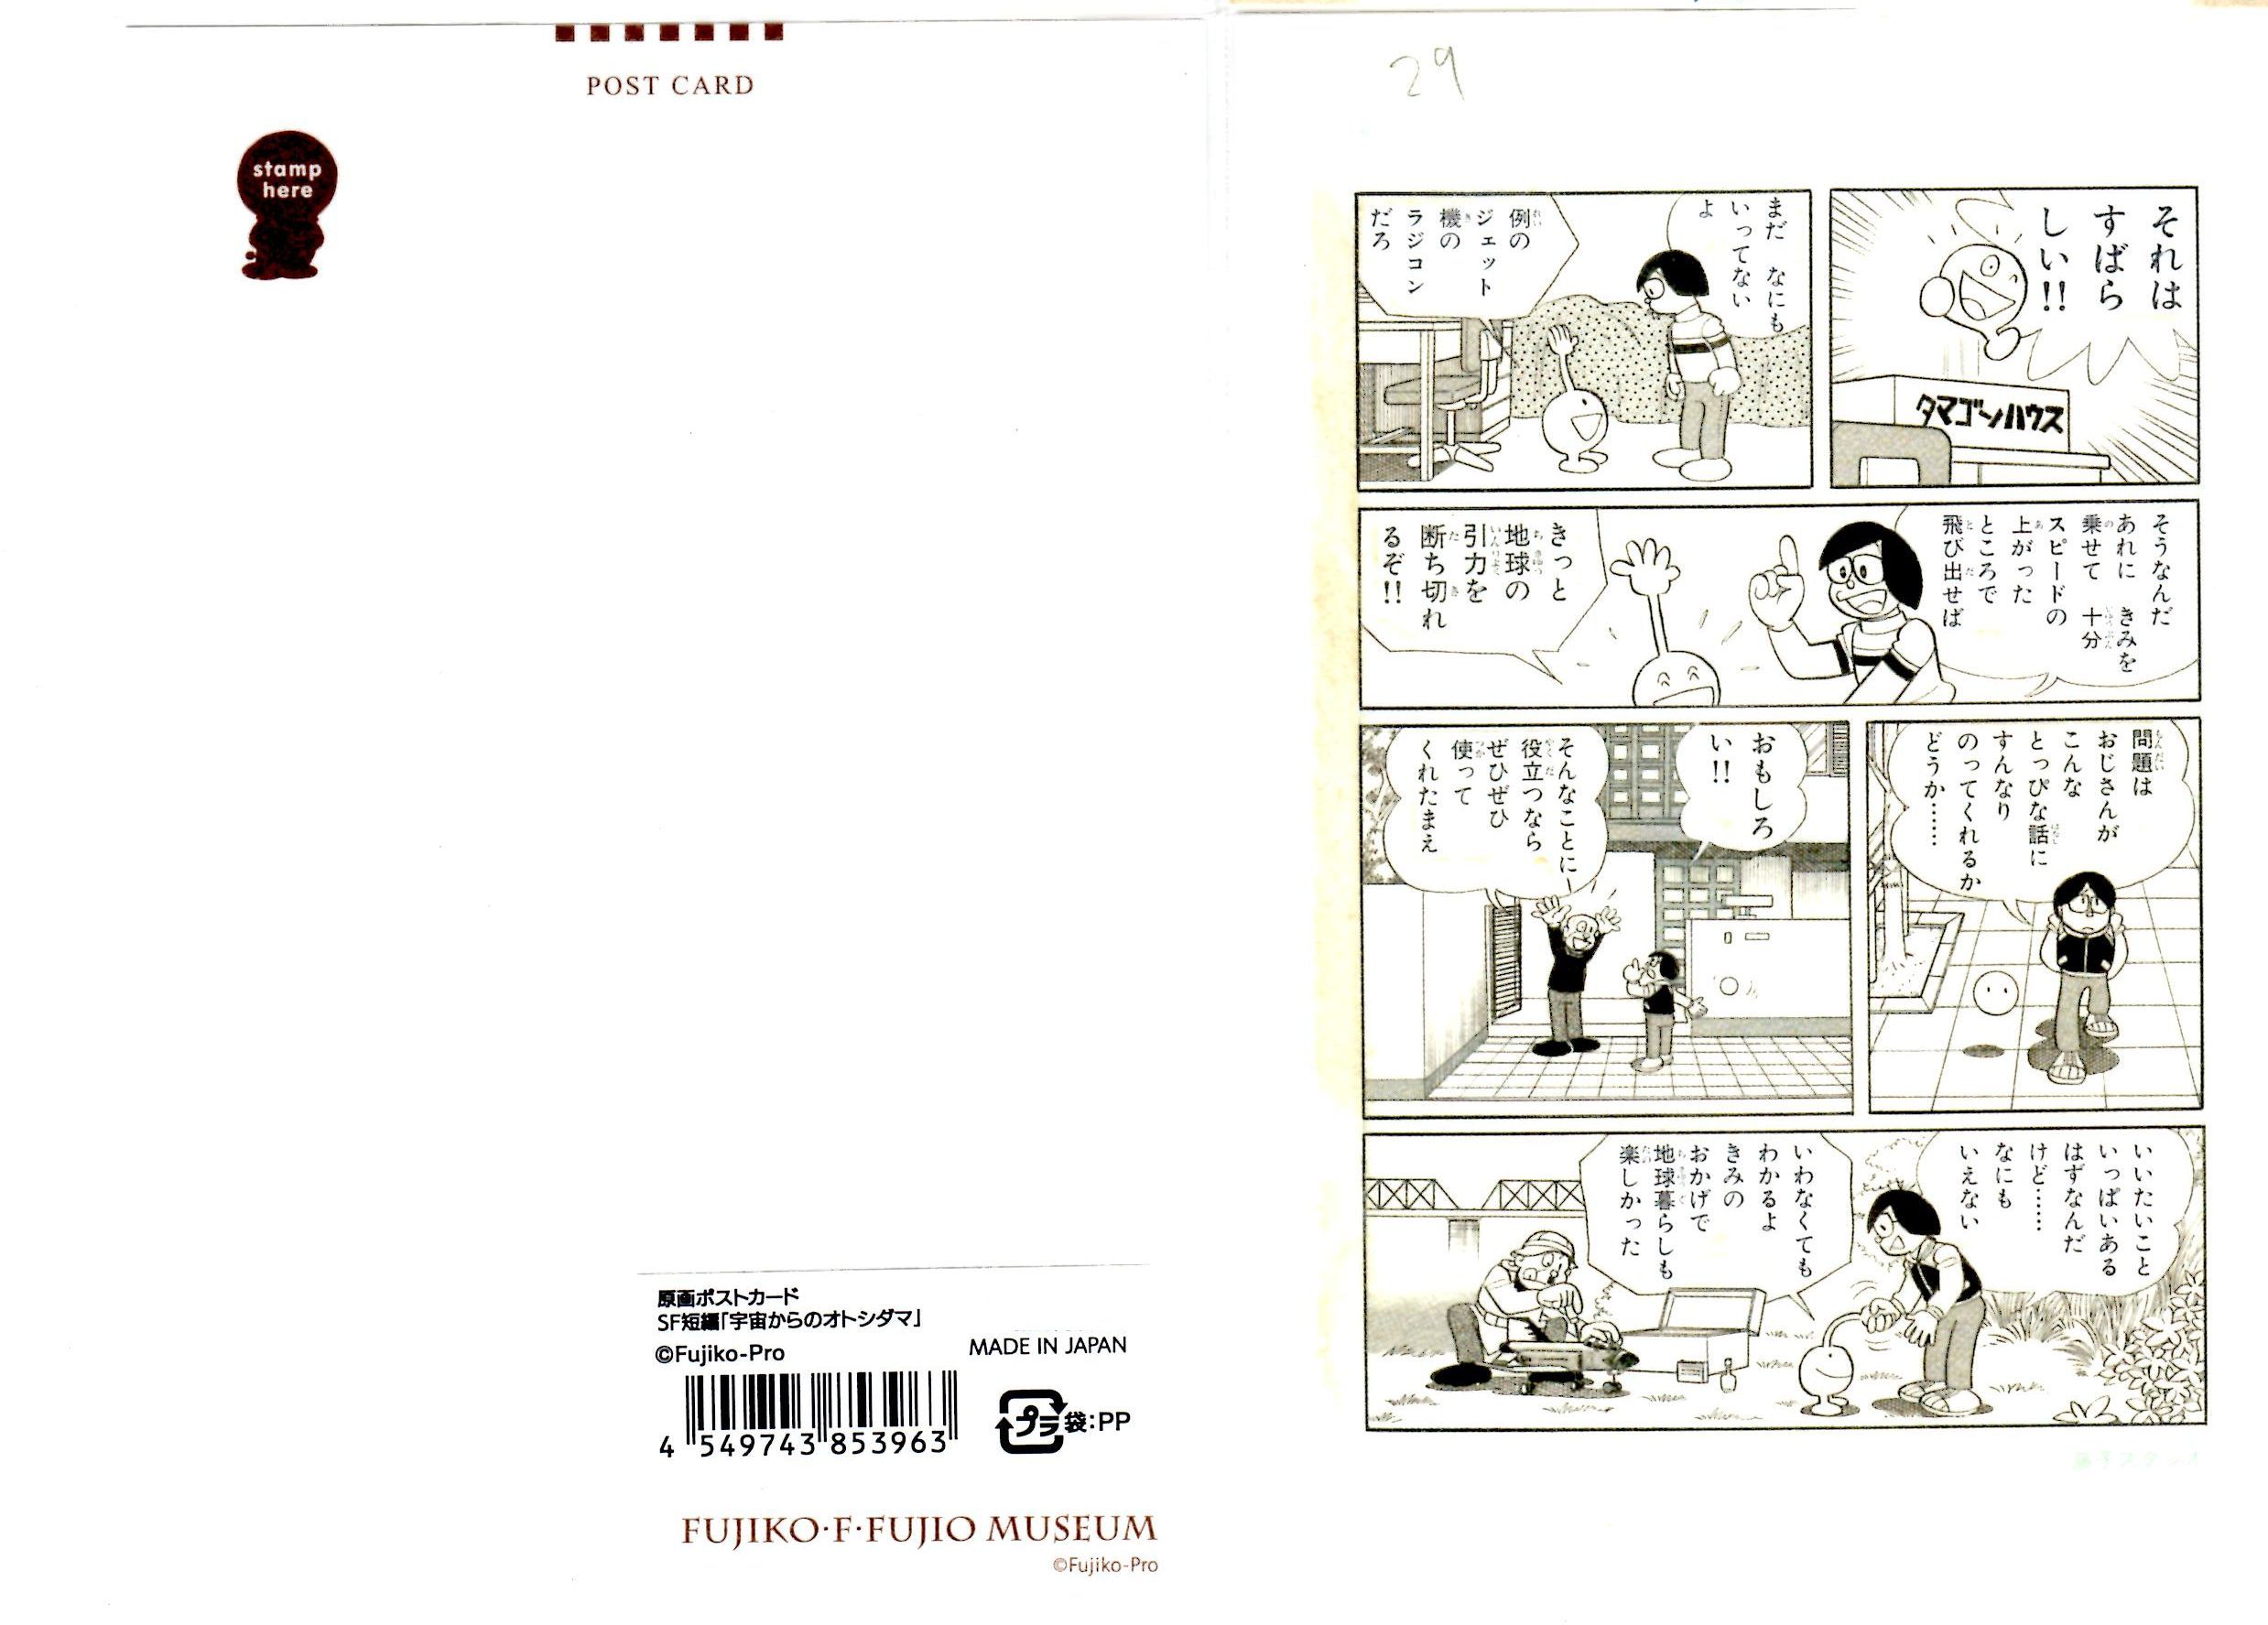 オバケのQ太郎 原画ポストカード 「宇宙からのオトシダマ」 藤子・F・不二雄ミュージアム限定画像